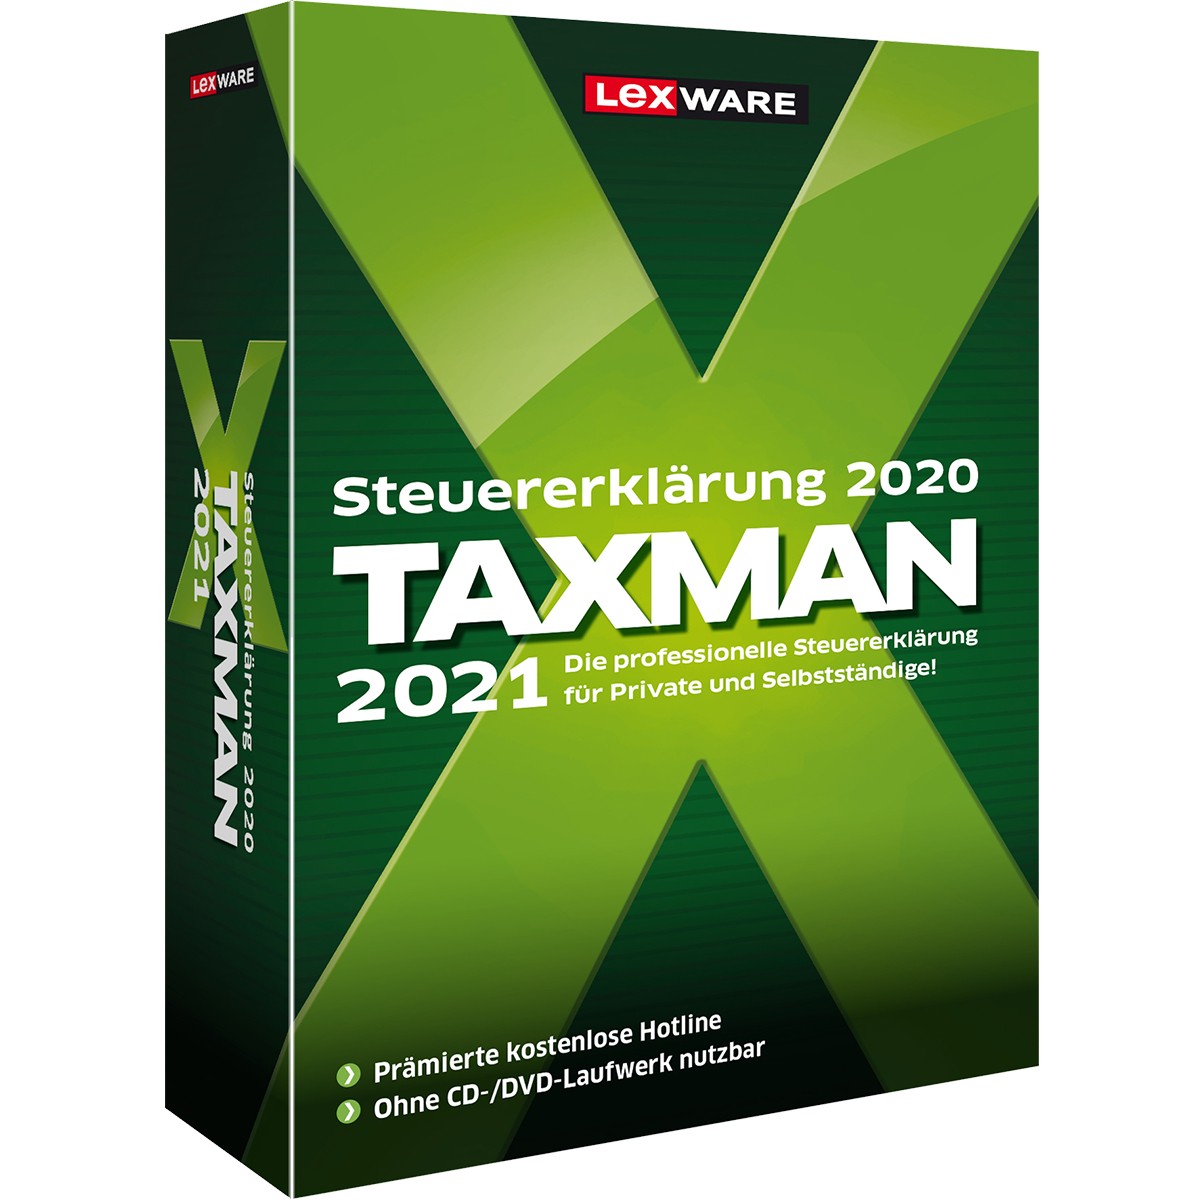 Lexware TAXMAN 2021 für Selbstständige - 1 Device. ESD-DownloadESD